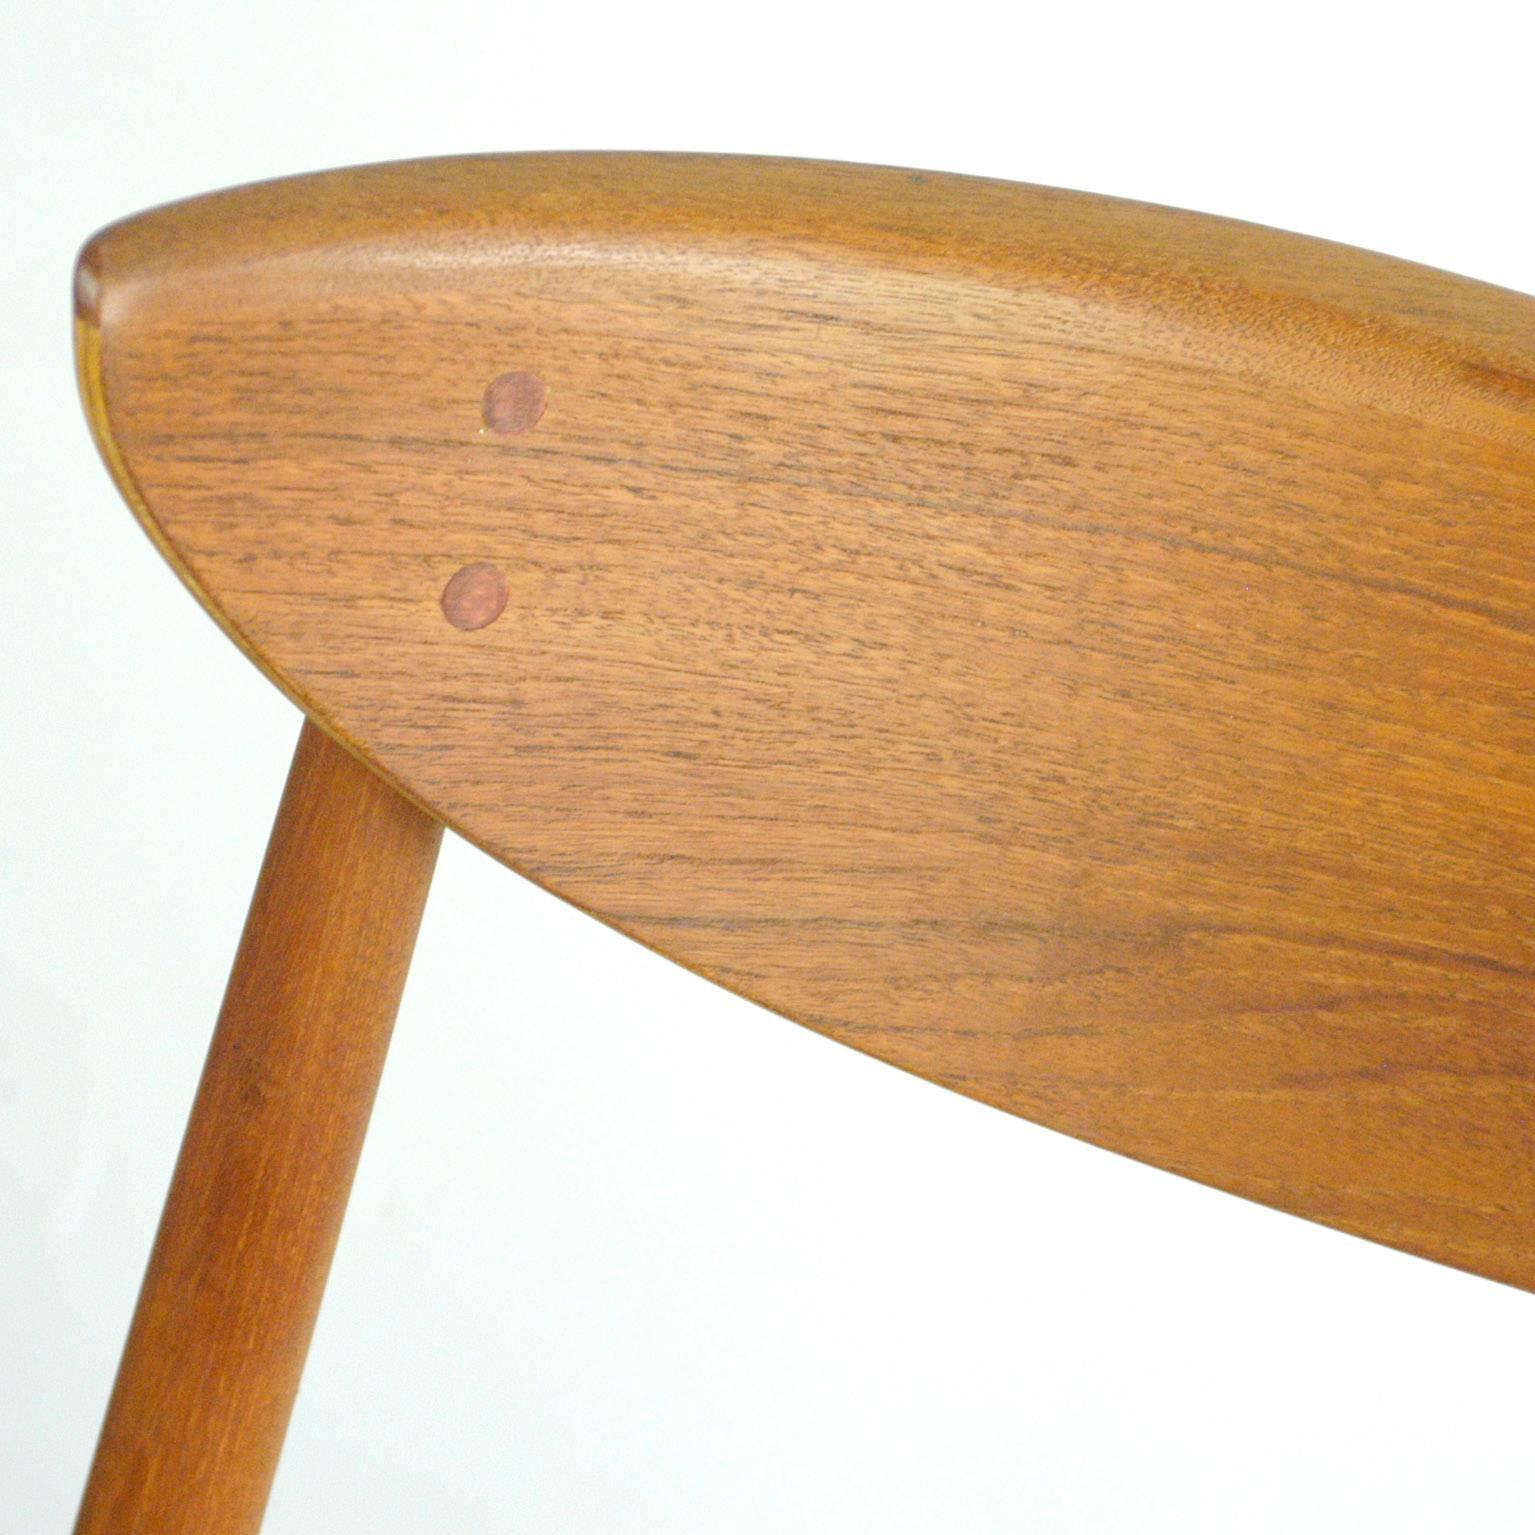 Cane Scandinavian Modern Mod. 313 Teak Chair designed by Peter Hvidt